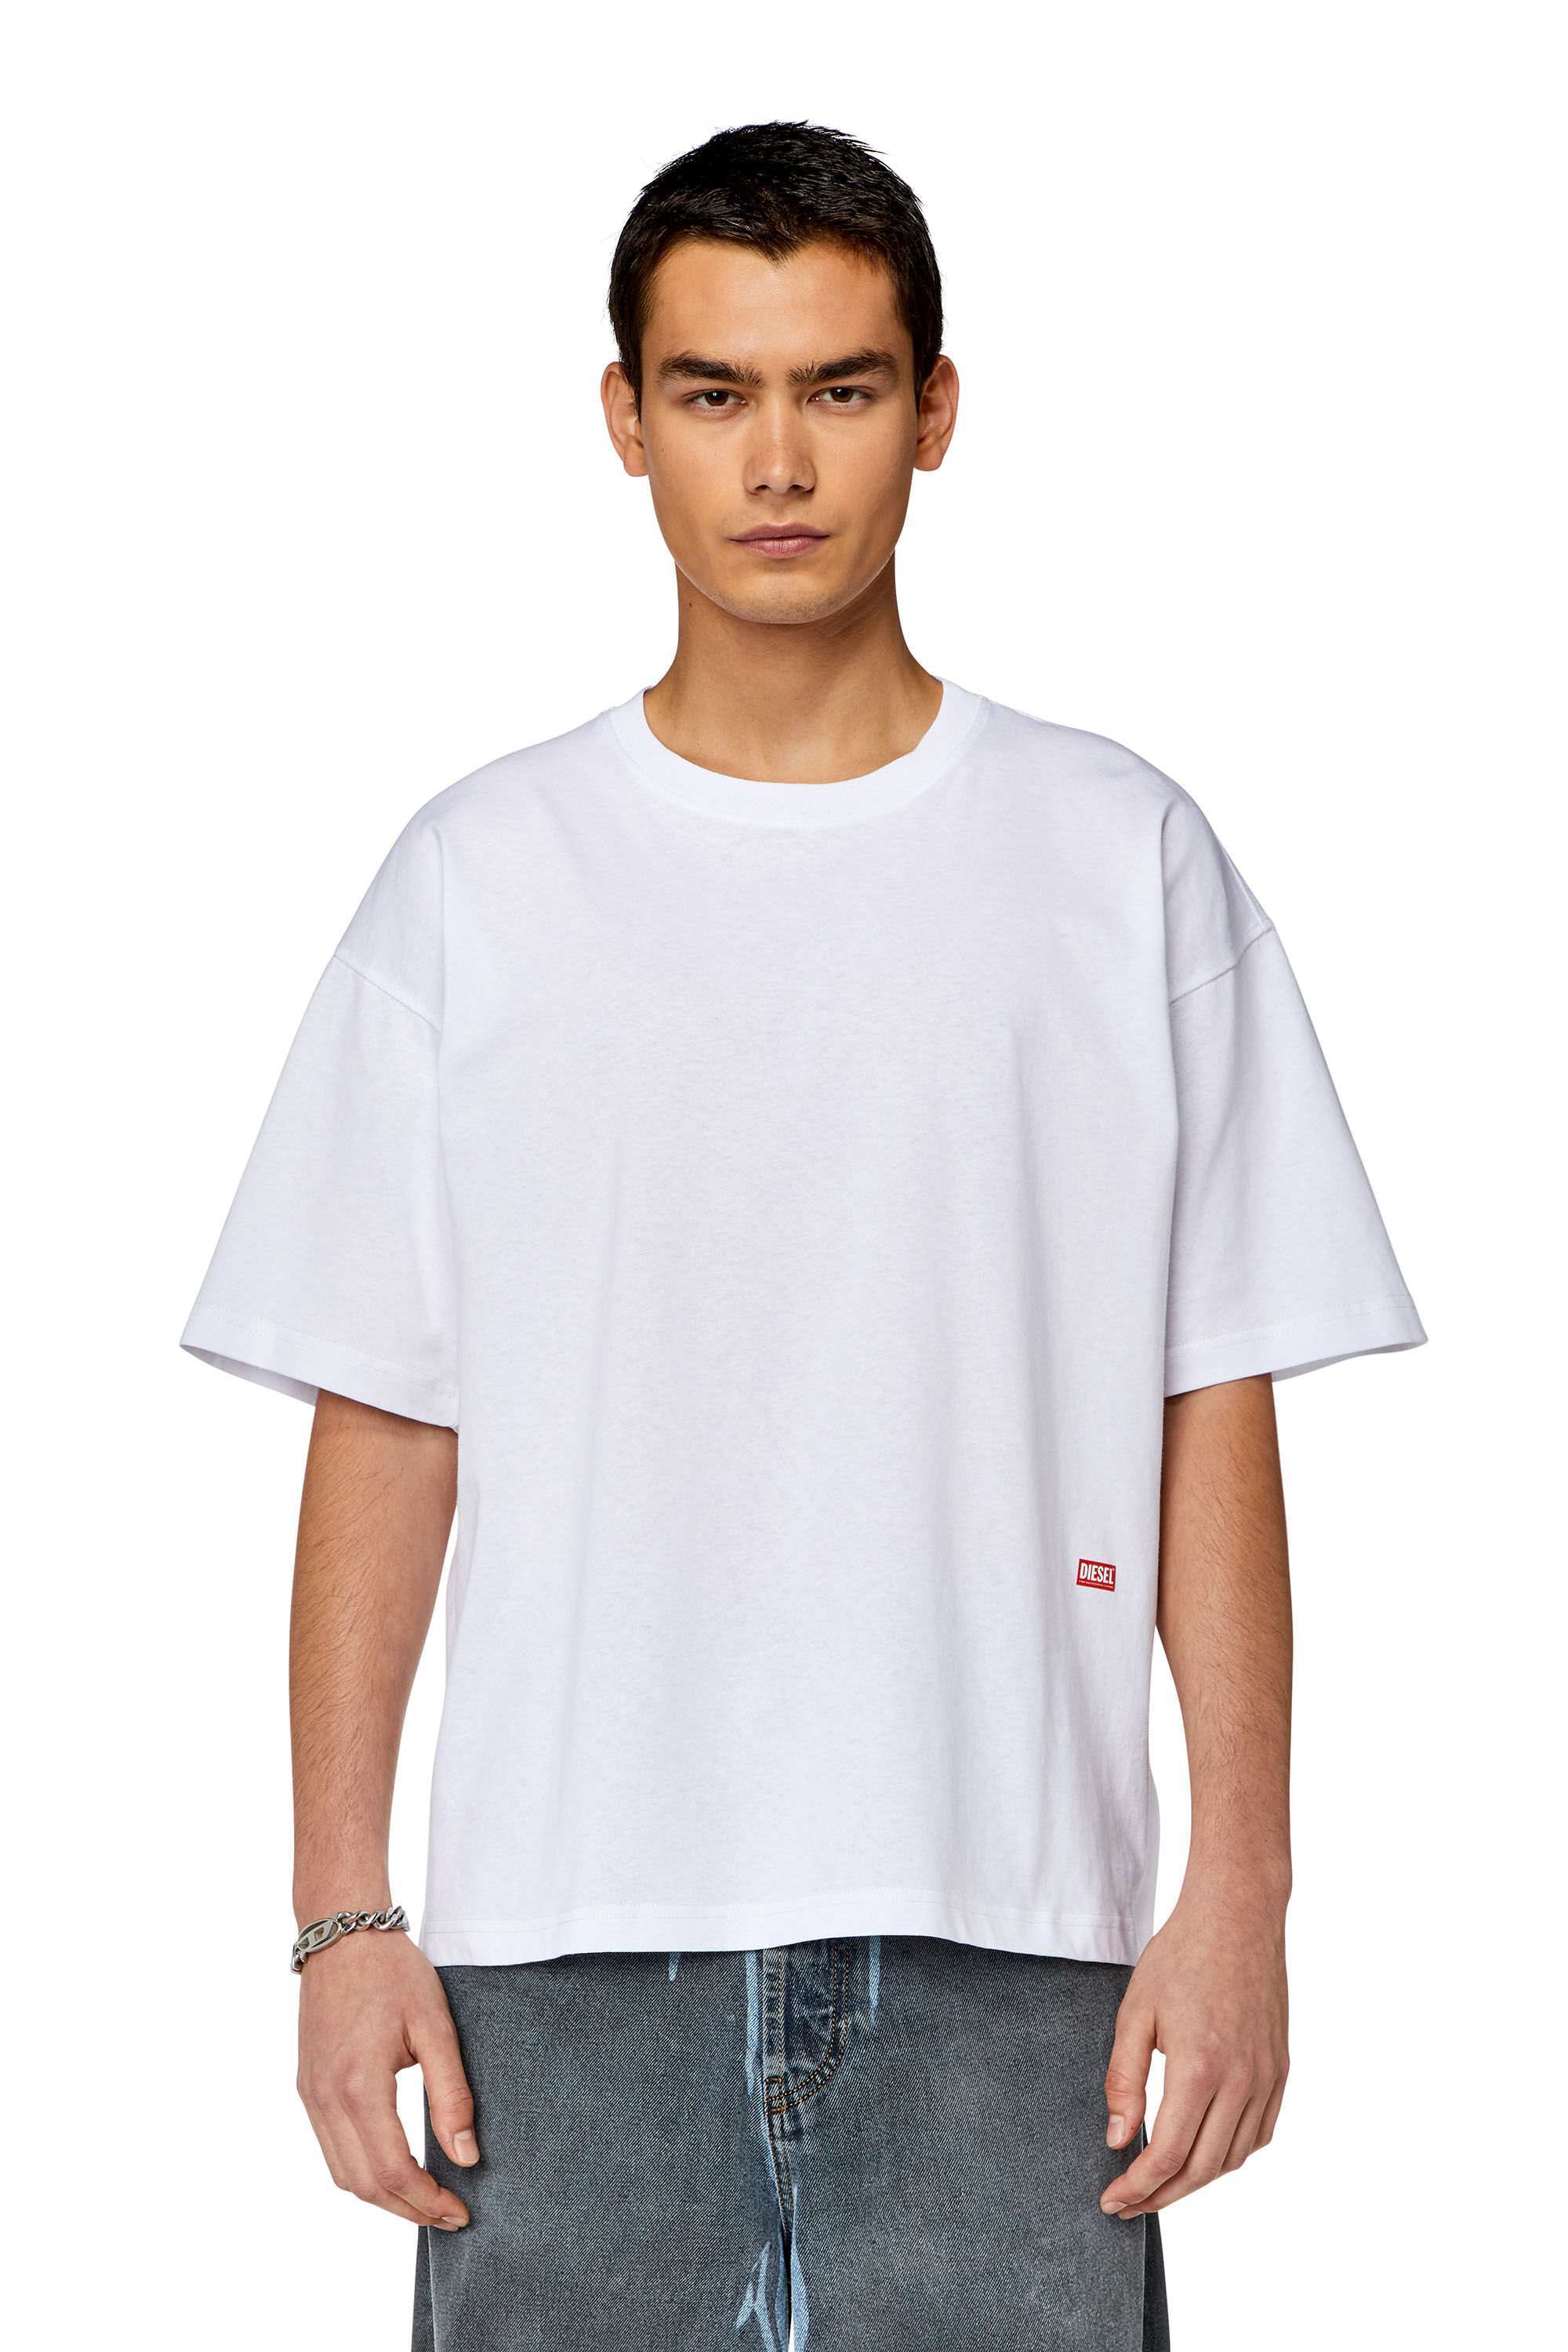 Diesel - T-BOXT-N11, Homme T-shirt avec logo imprimé photo in Blanc - Image 4